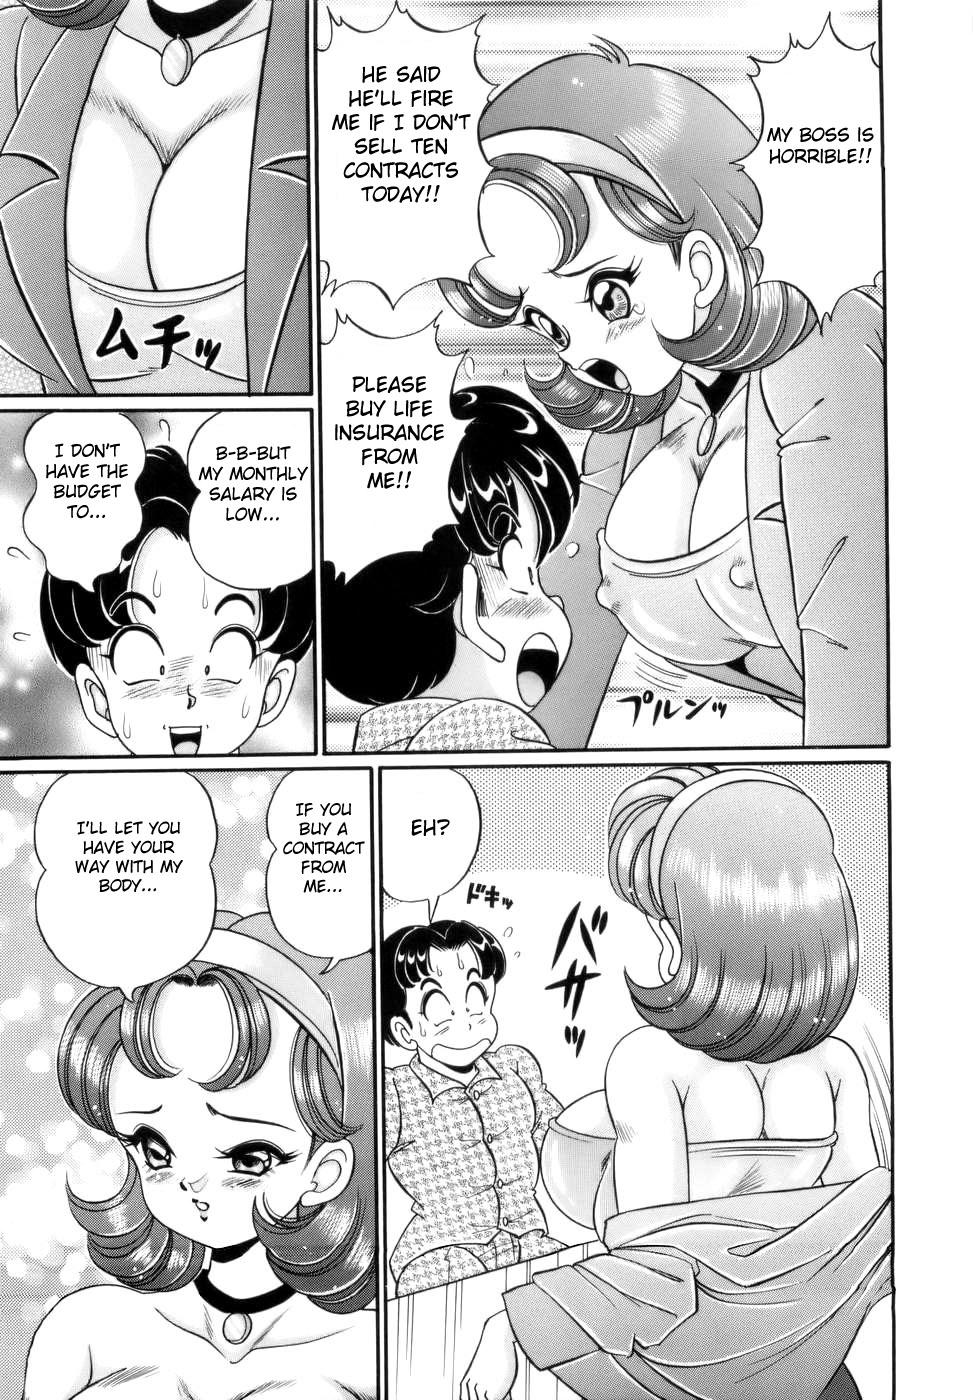 Sissy Himitsu no Keiyakusho Spooning - Page 5